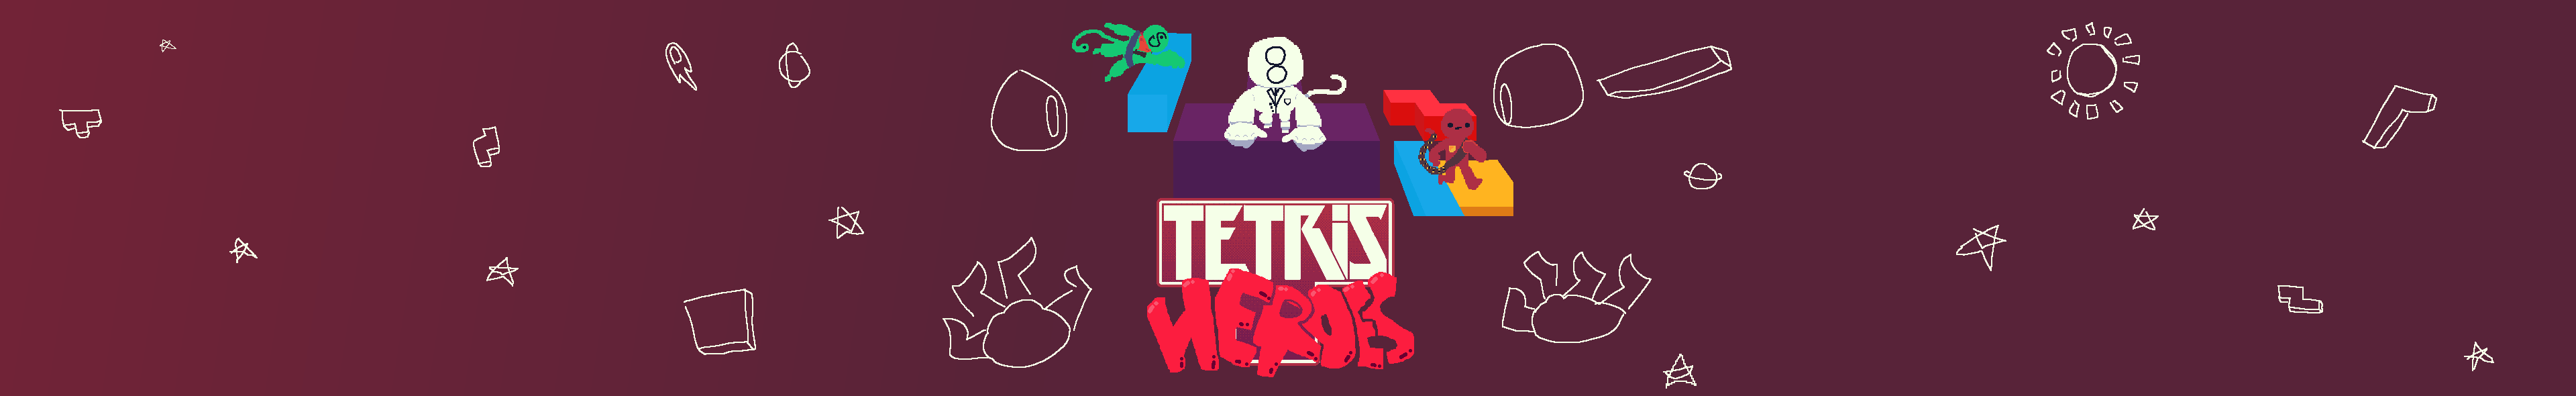 Tetris: HEROES